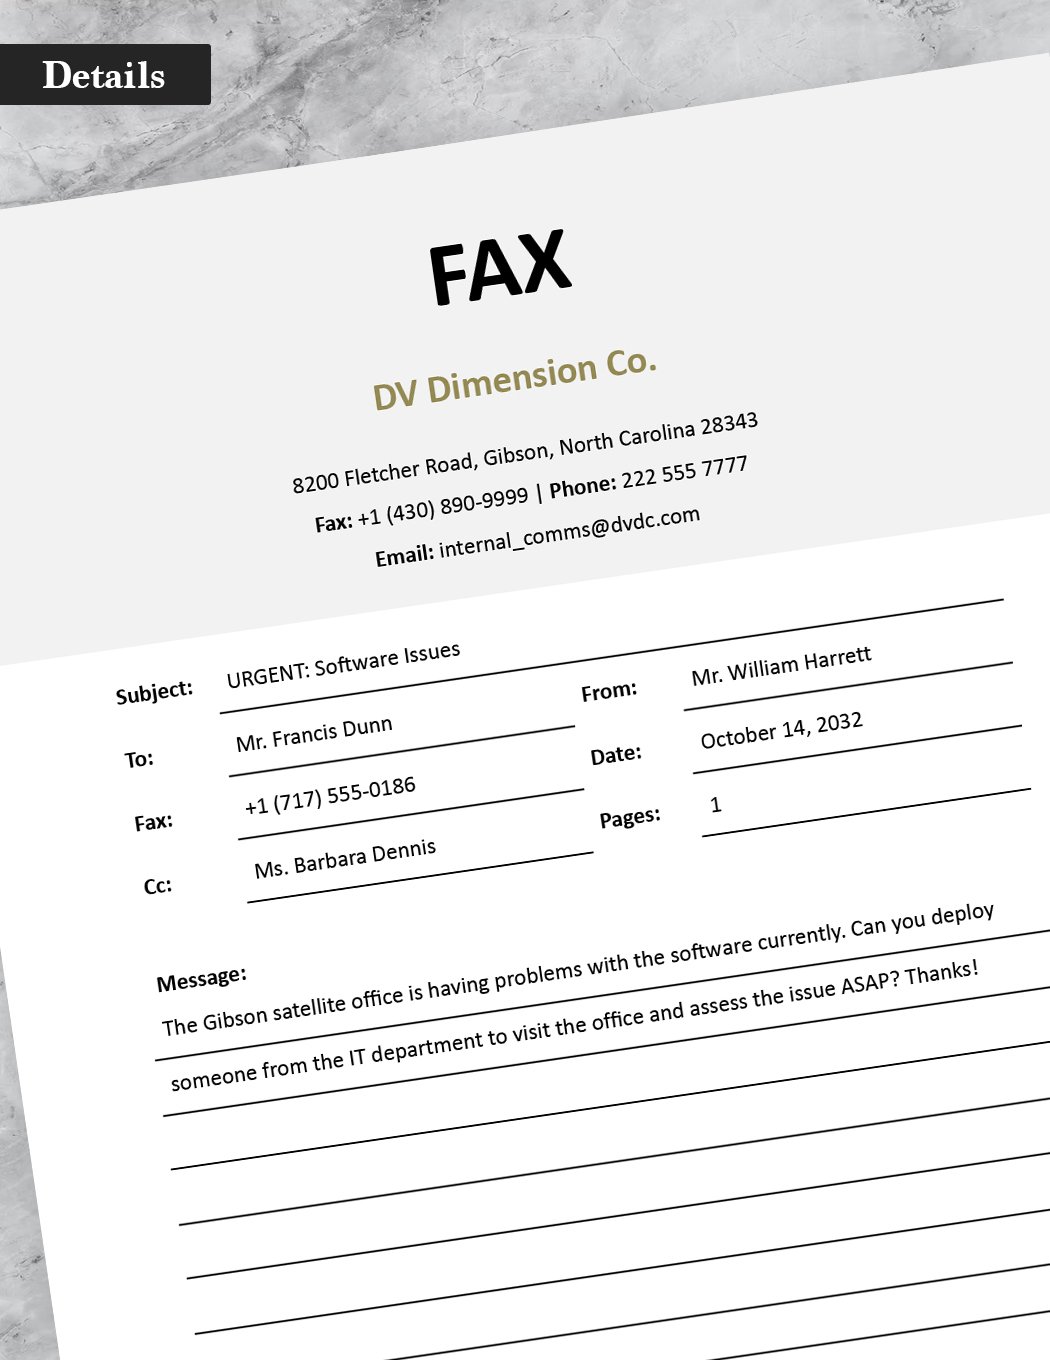 Tech Fax Cover Sheet Template